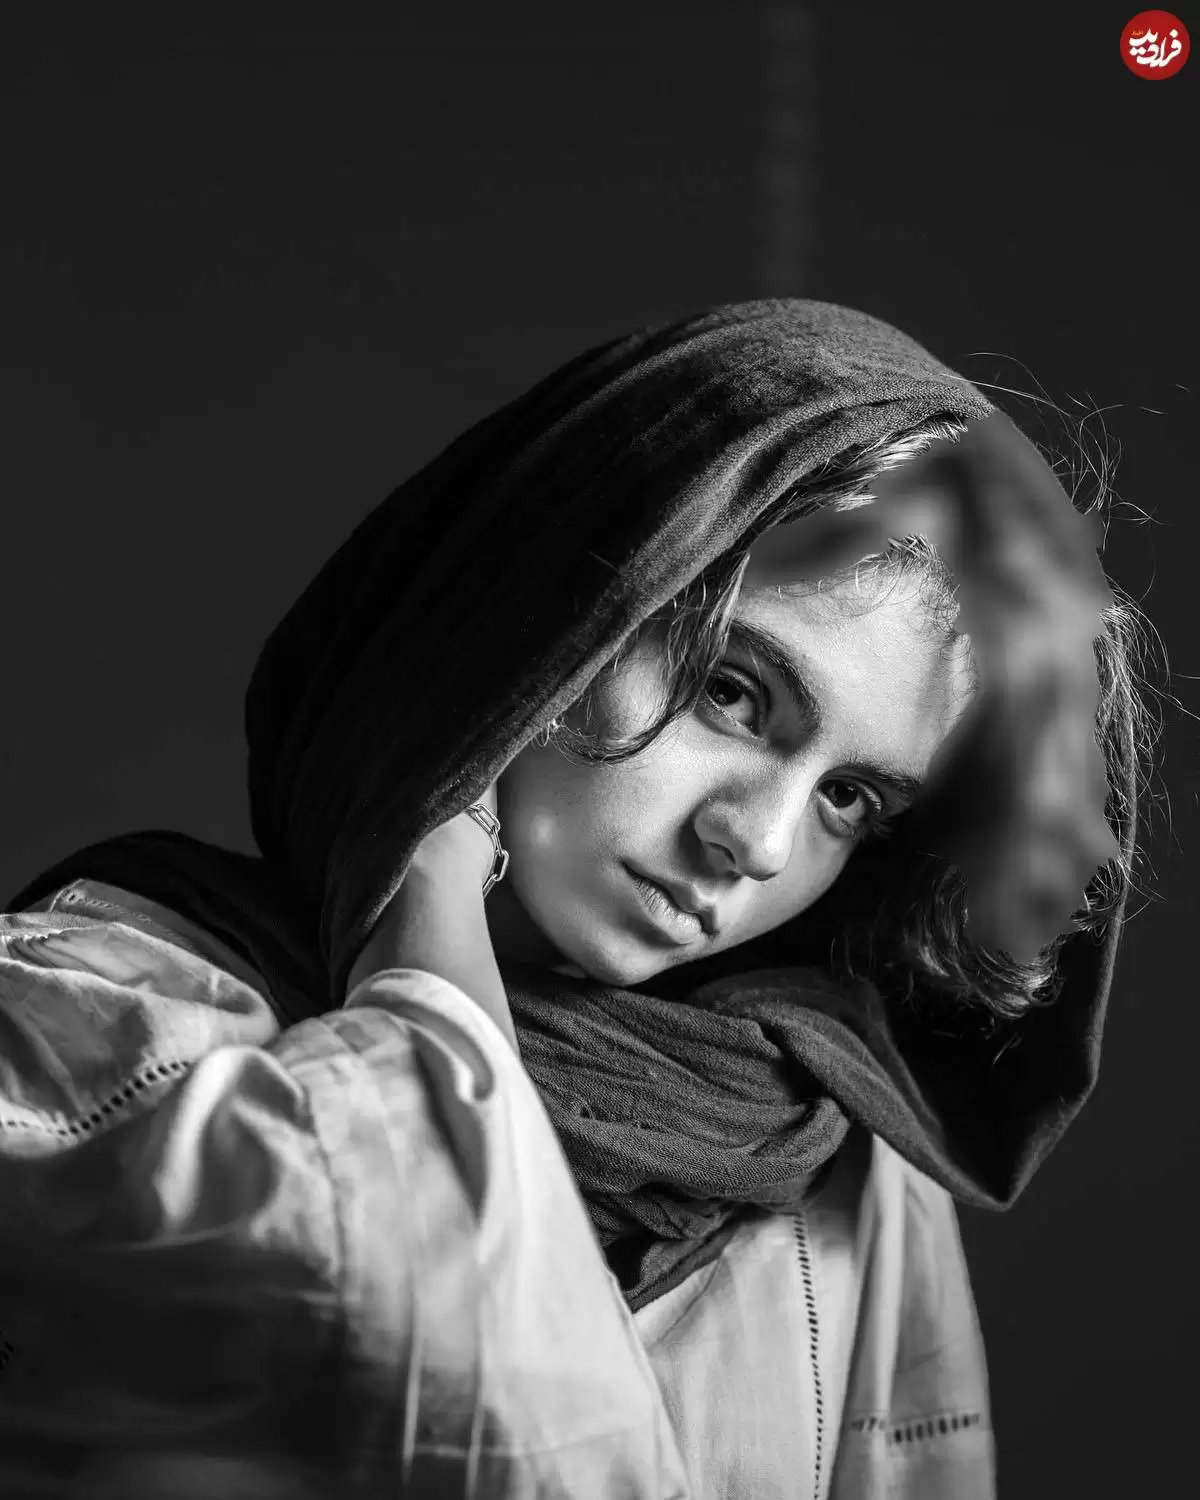  تغییر چهره  زیبایی مائده سریال زخم کاری بعد 3 سال !  -  در 19 سالگی جذاب ترین سینمای ایران شد !